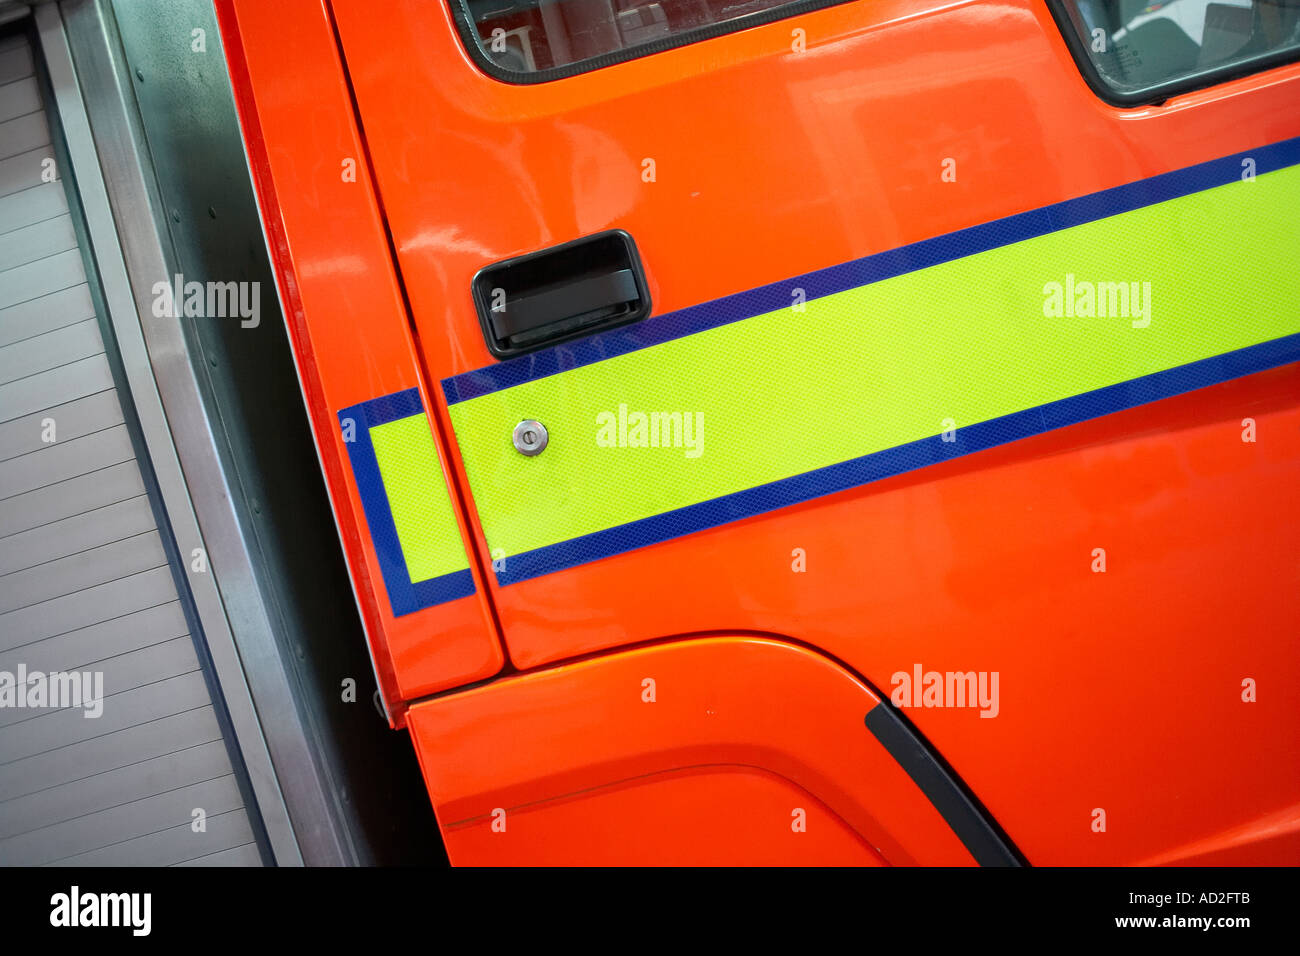 Feuerwehr und Rettungsdienste, Feuerwehr Detail, Kabine, Beleuchtung, Orange, rot, gelb, blau, Fenster. Stockfoto